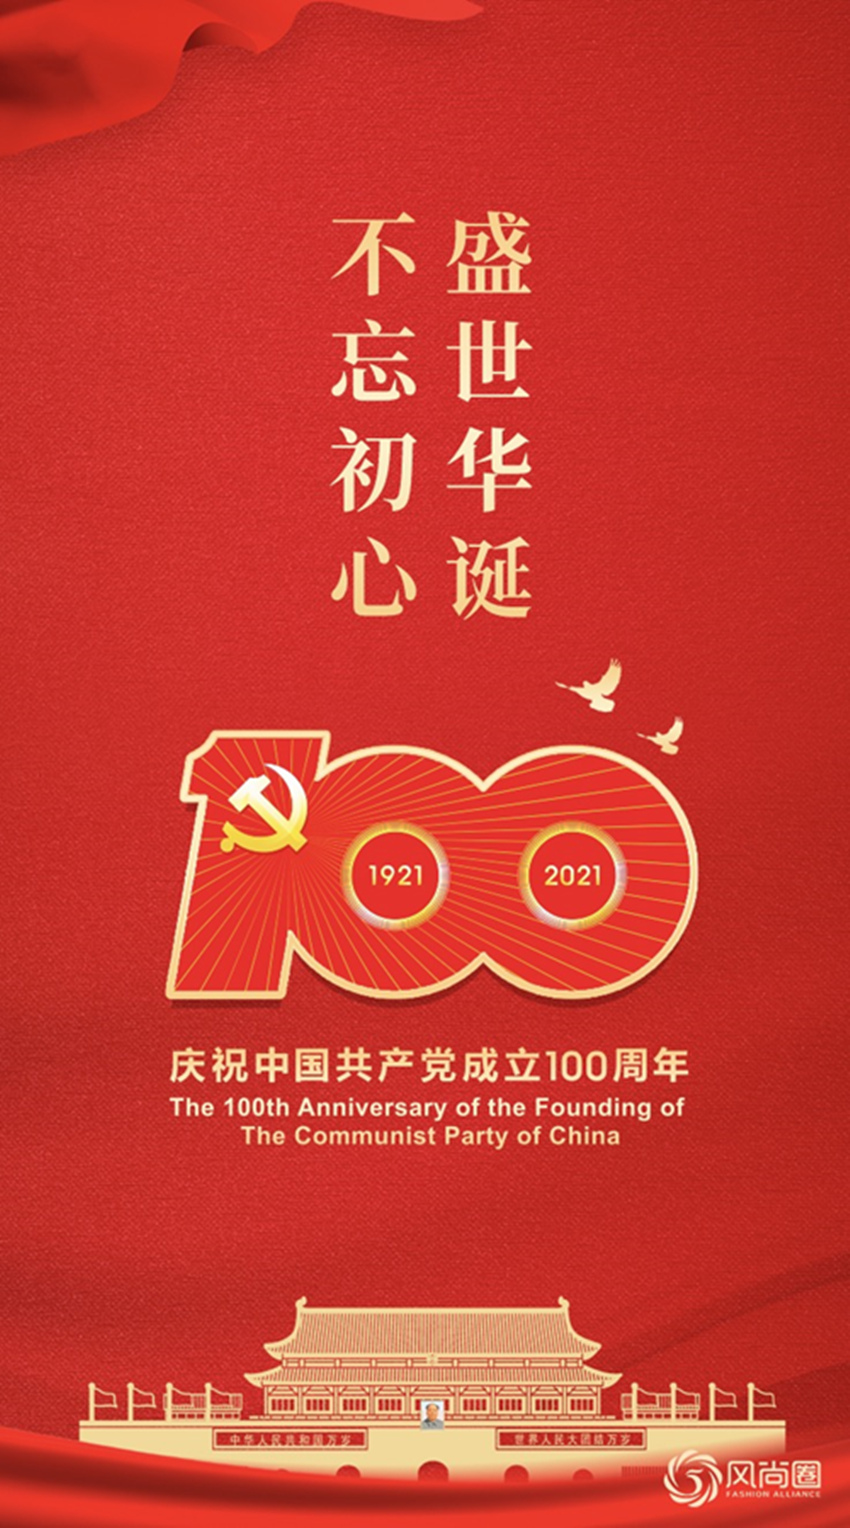 风尚圈庆贺中国共产党成立100周年